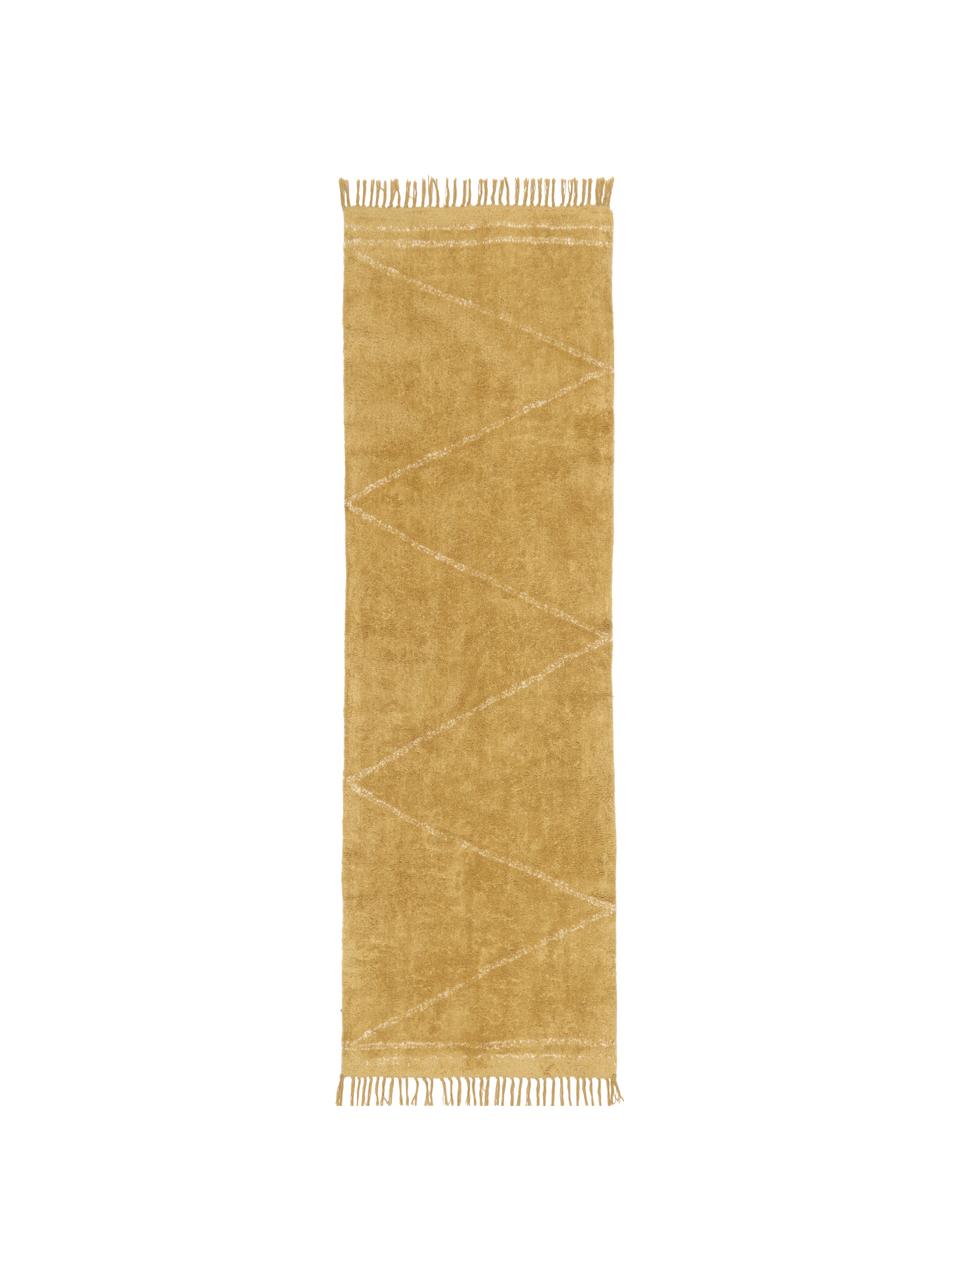 Handgetufte katoenen loper Asisa met zigzag patroon en franjes, Geel, B 80 x L 250 cm